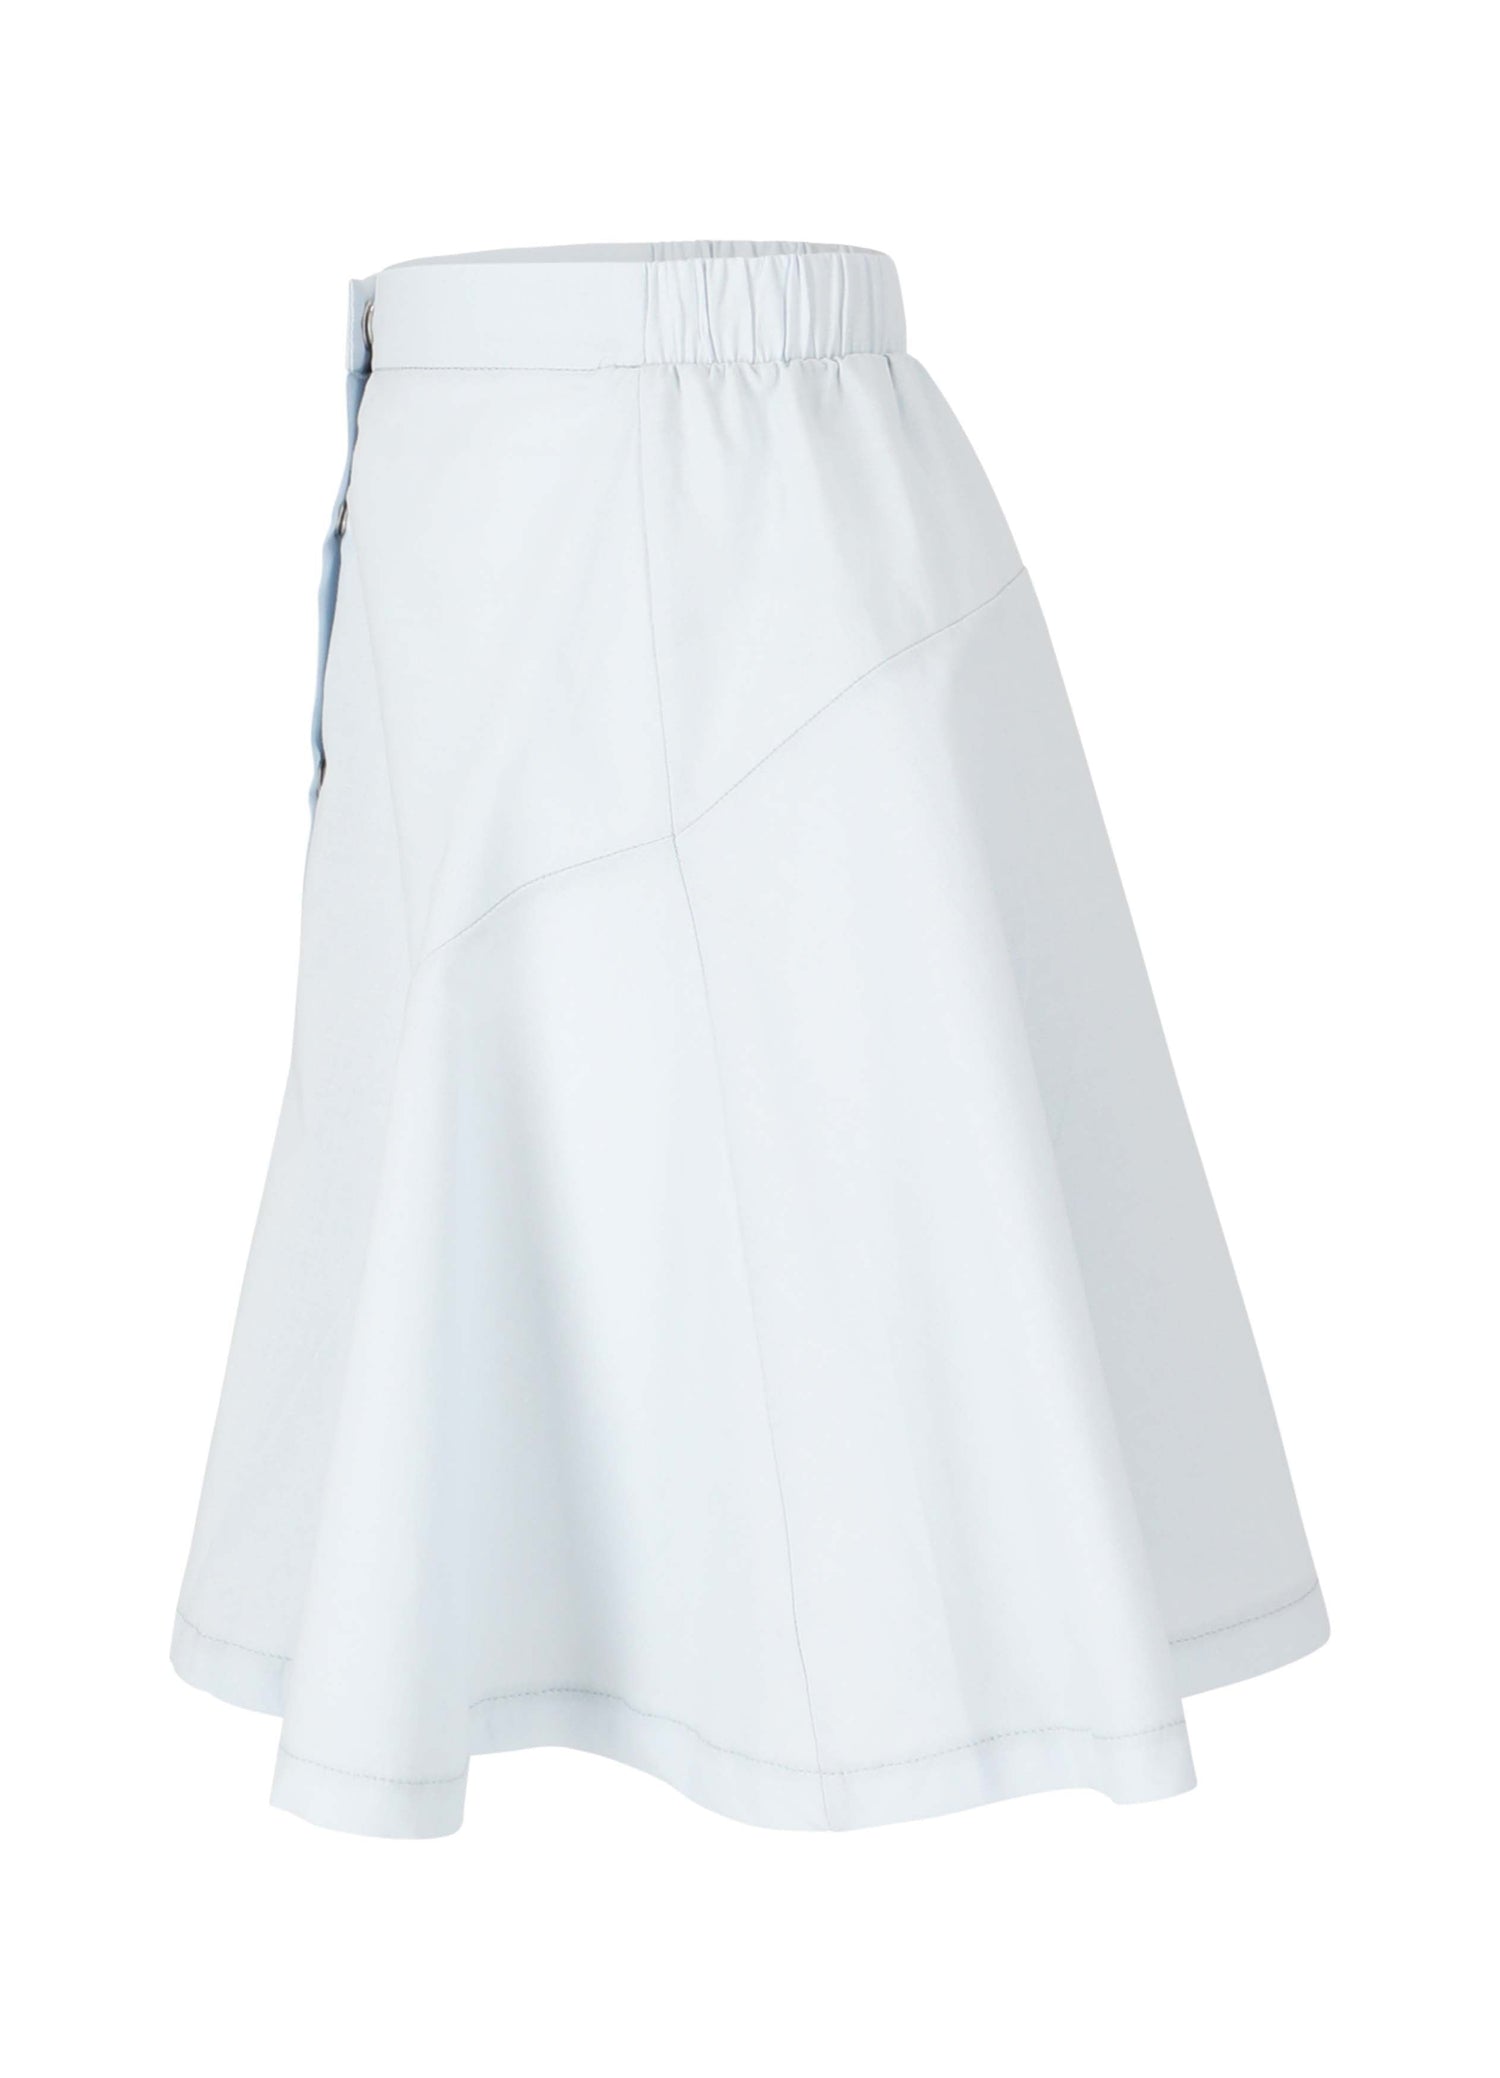 Skirt No. 9 - Celeste Skirts LMN3 